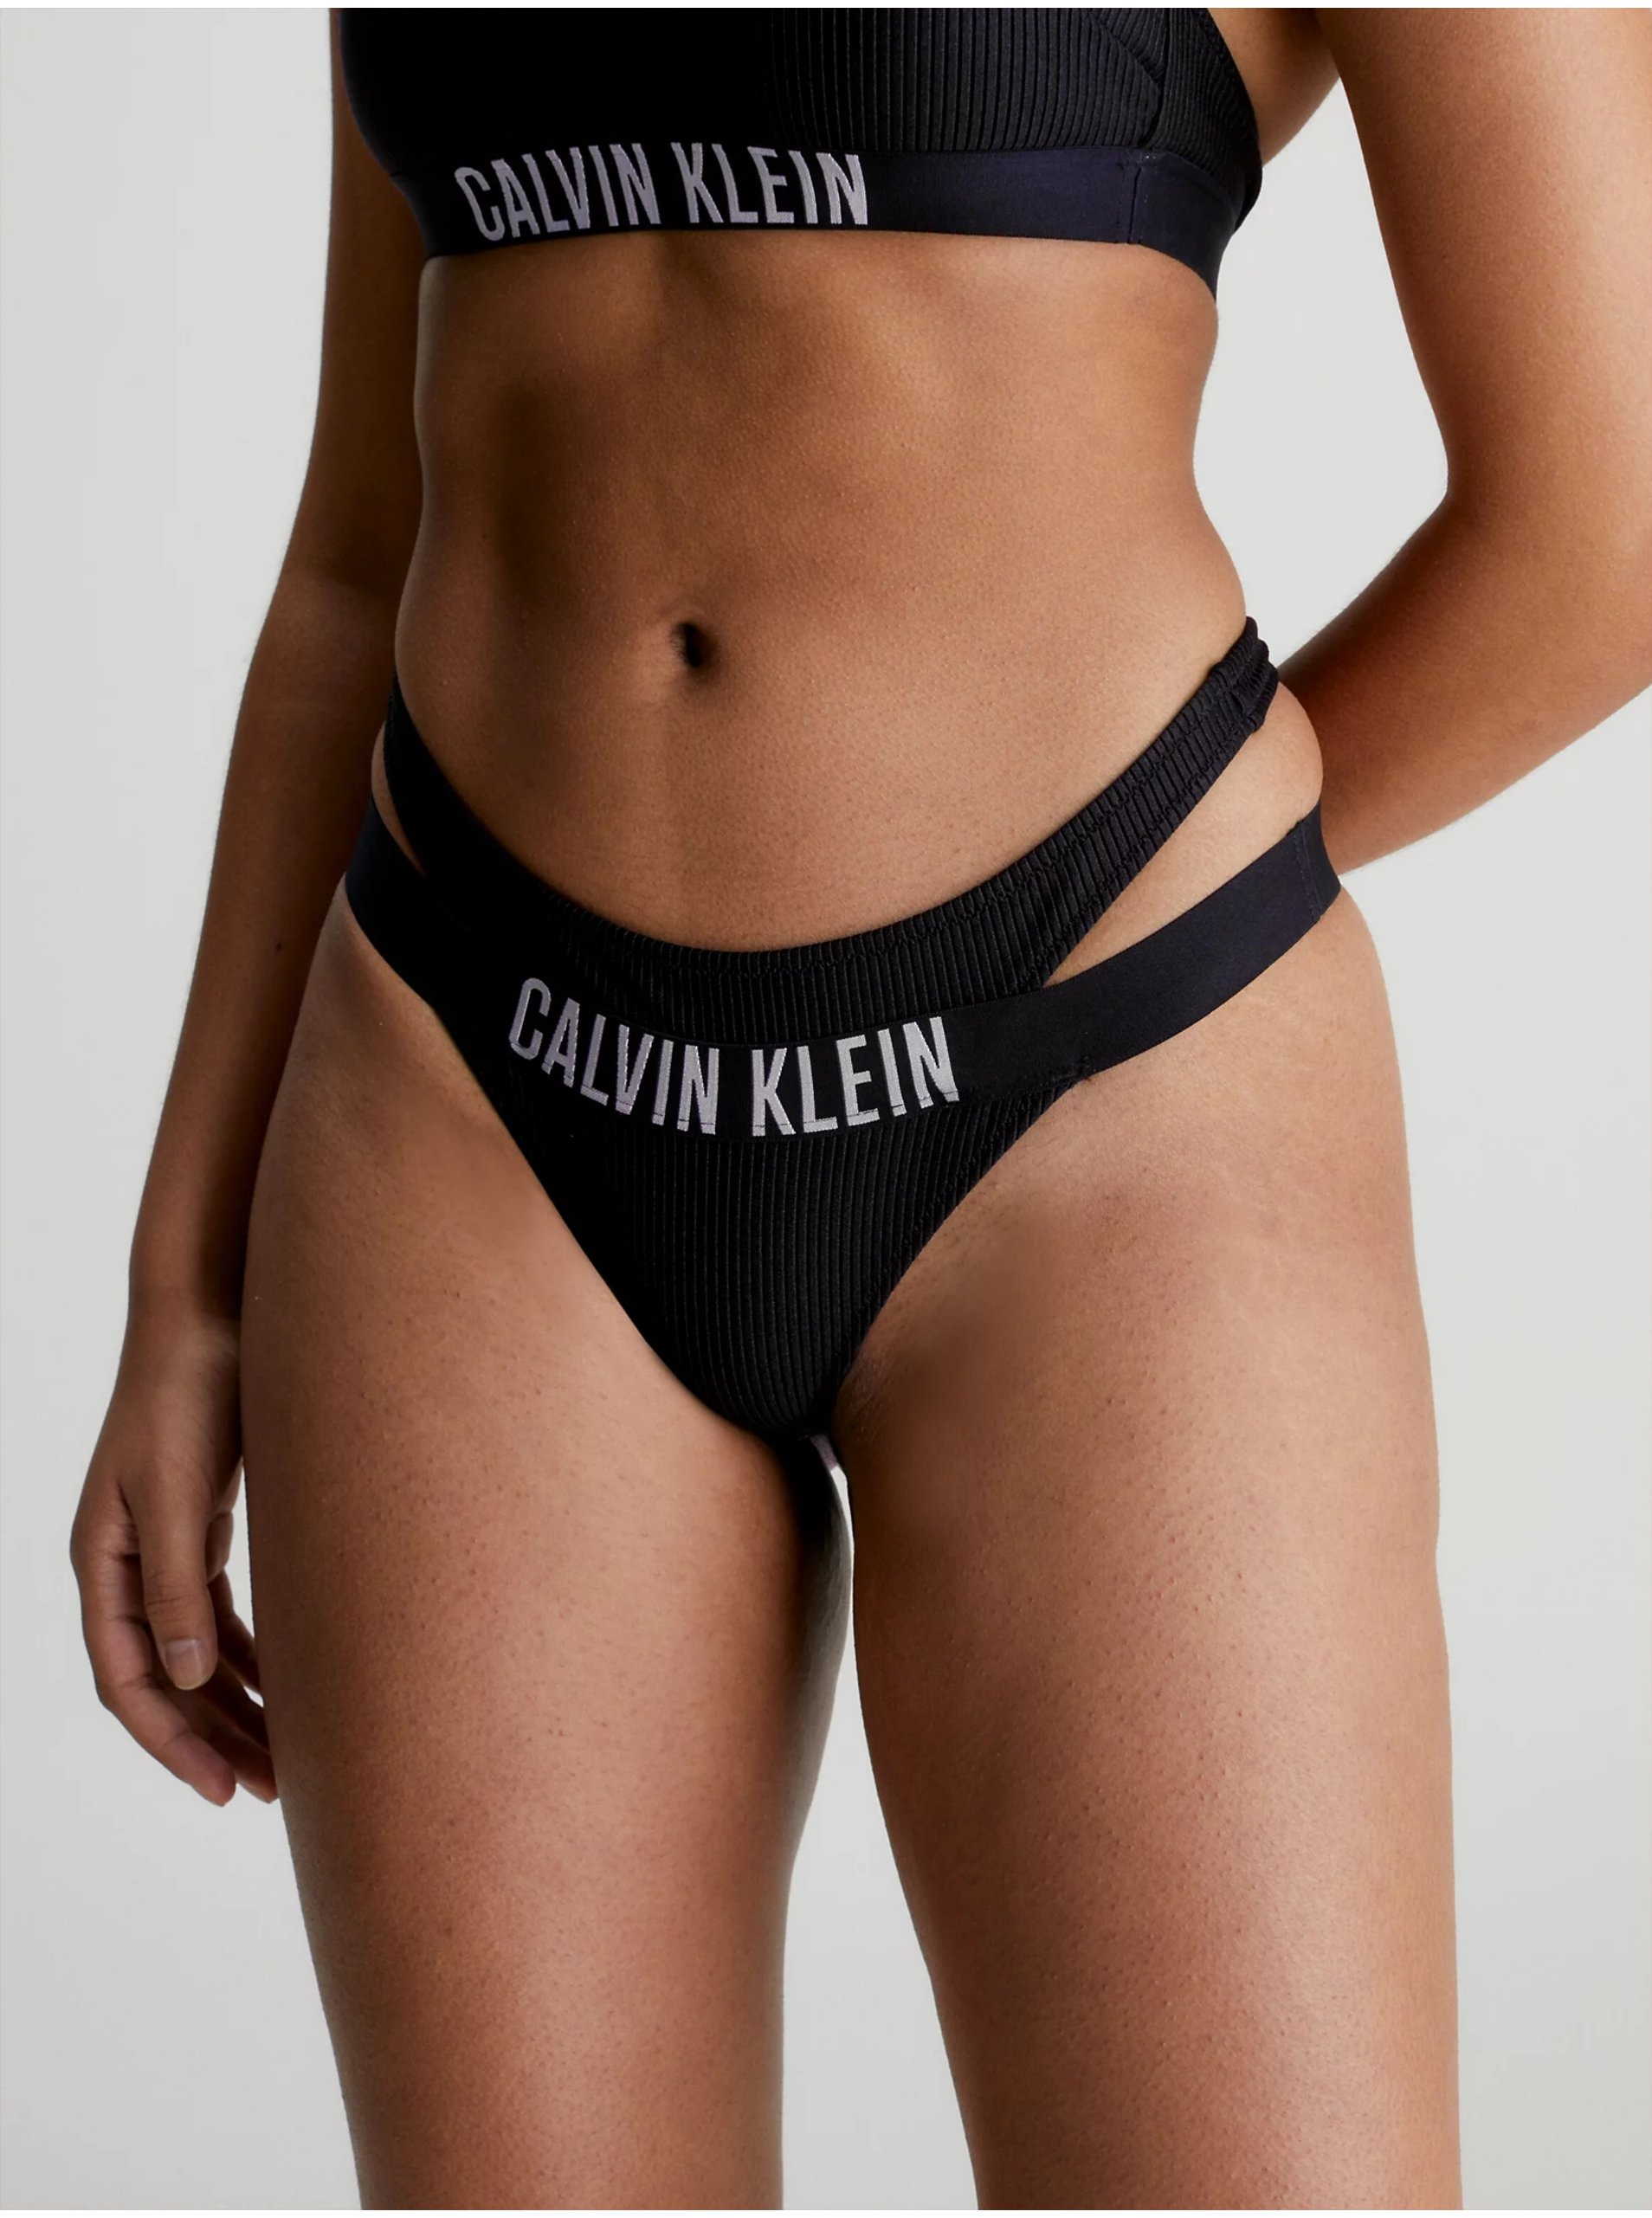 E-shop Černý dámský spodní díl plavek Calvin Klein Underwear